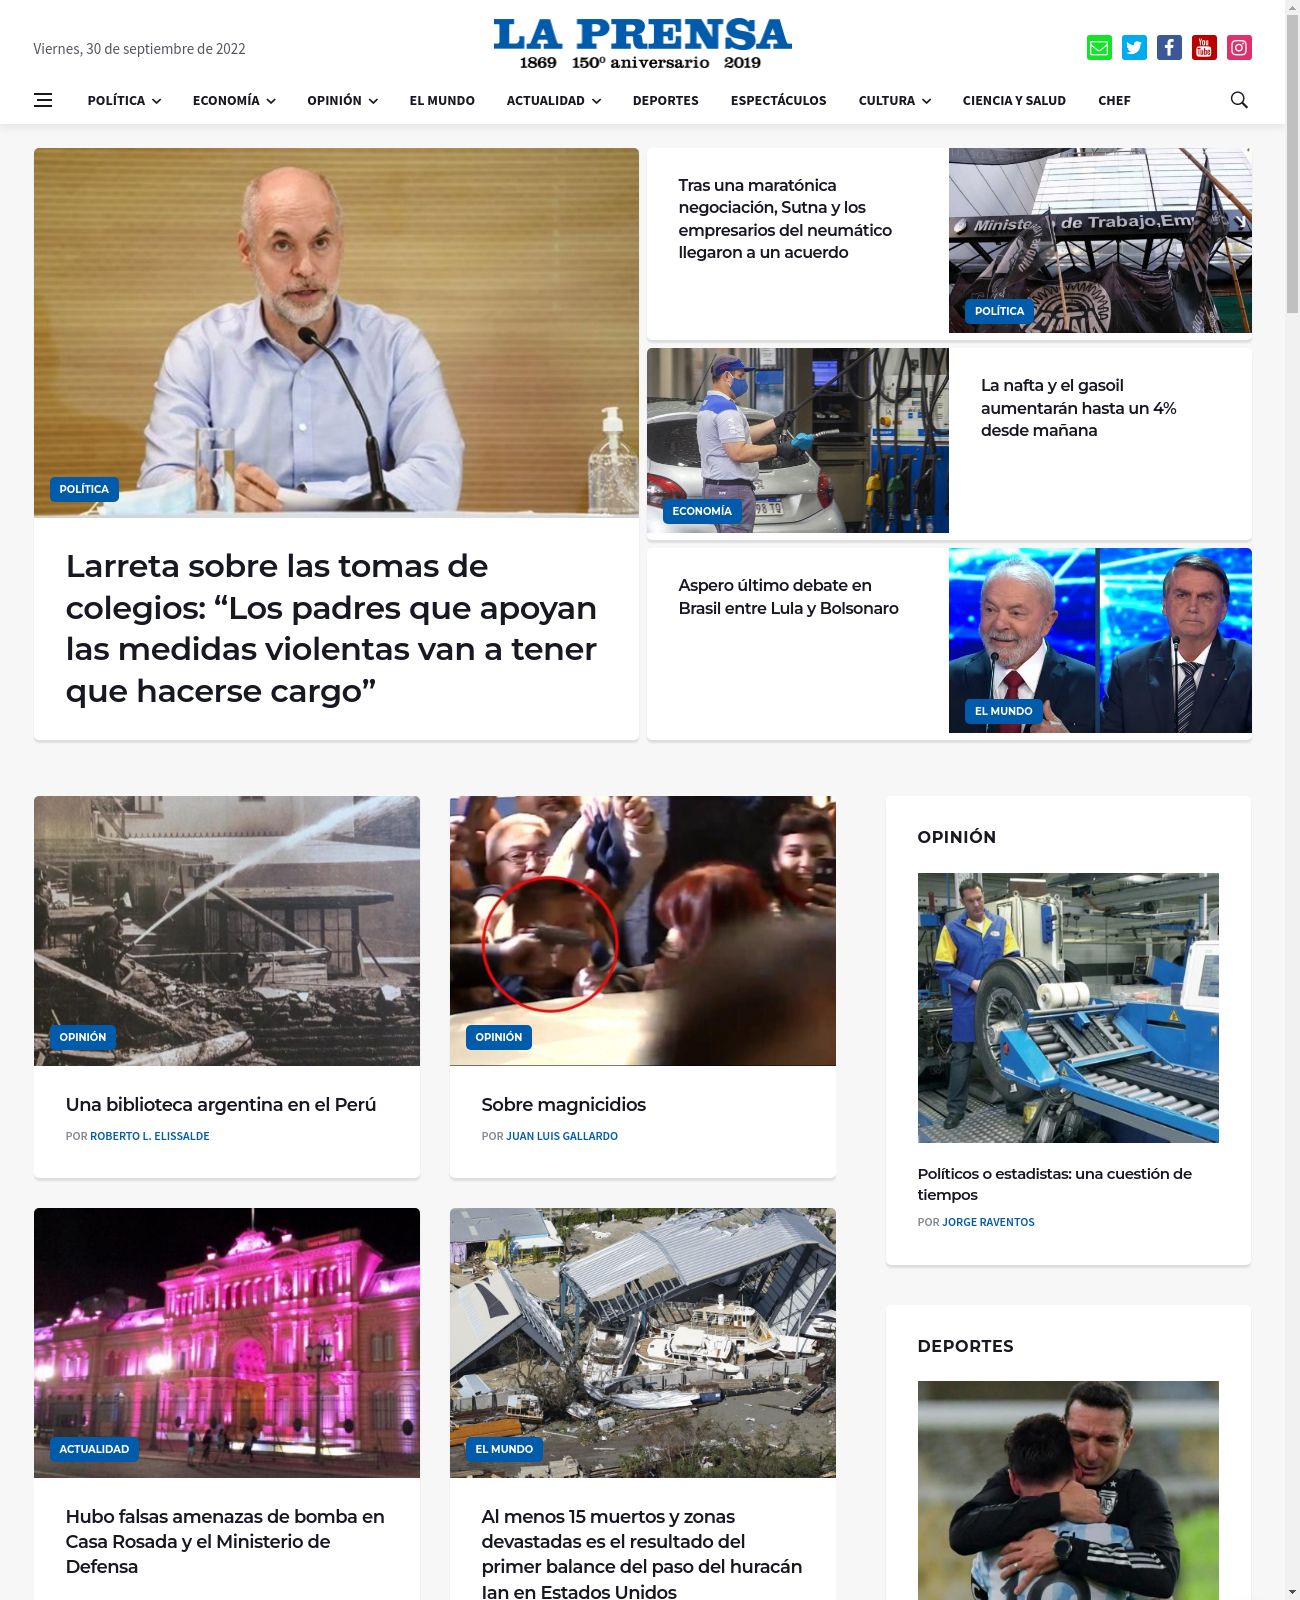 La Prensa at 2022-09-30 10:04:50-03:00 local time